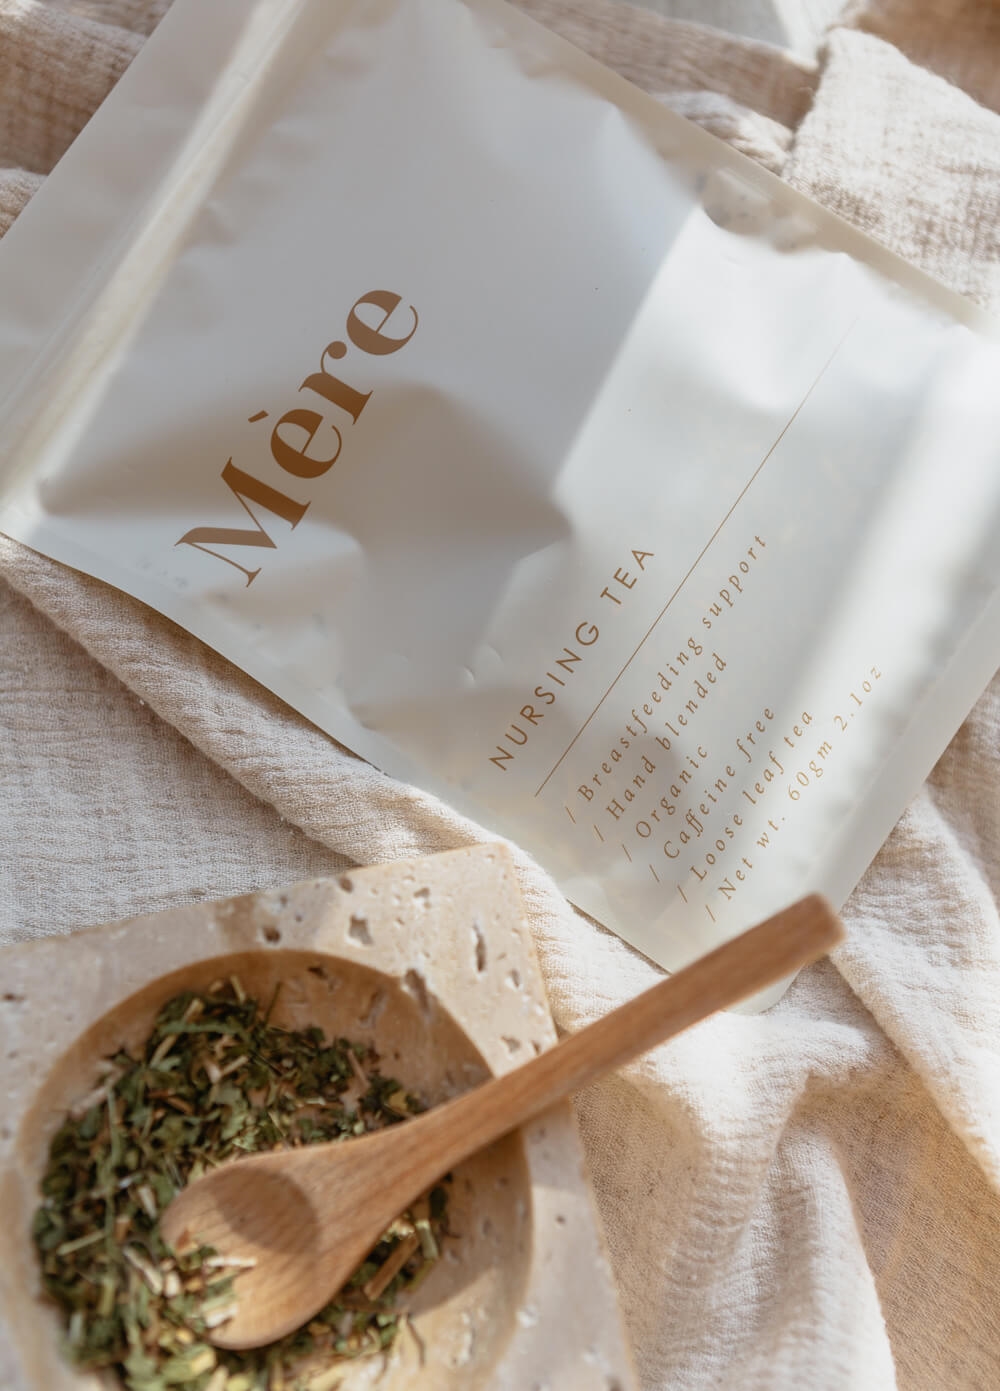 Mere Botanicals - Organic Nursing Tea | Queen Bee